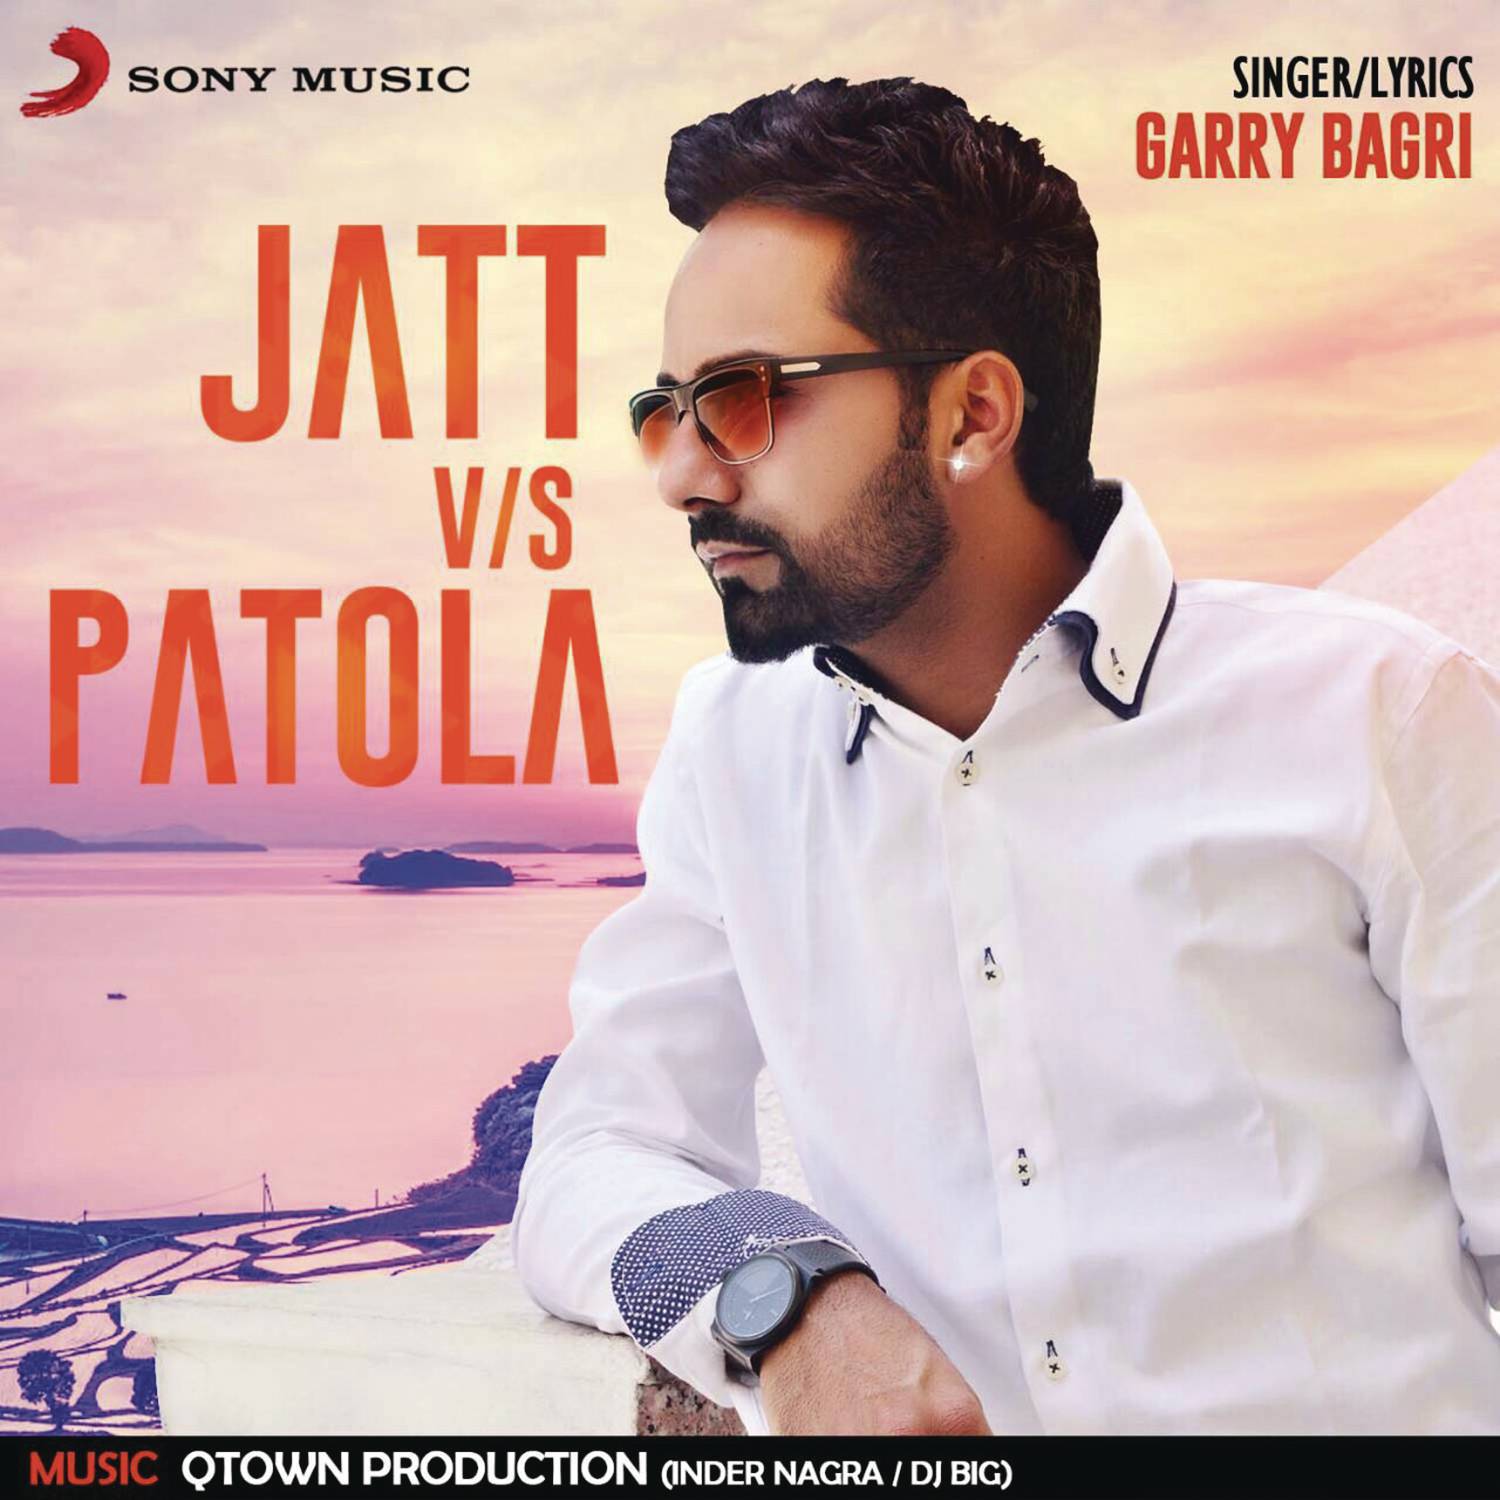 Jatt V/S Patola专辑